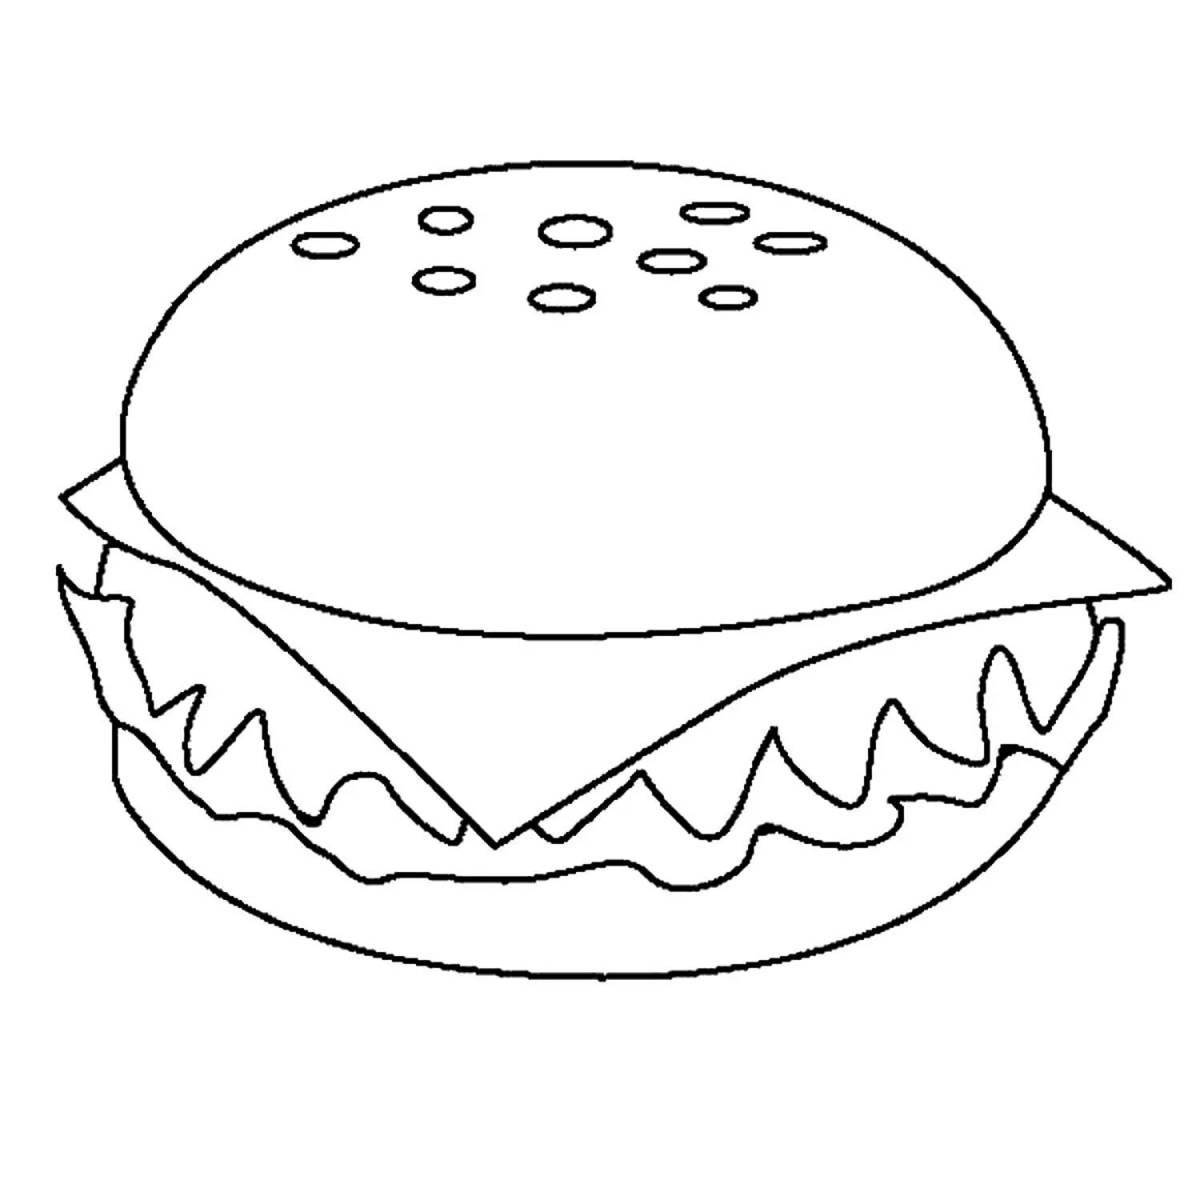 Sweet hamburger coloring page